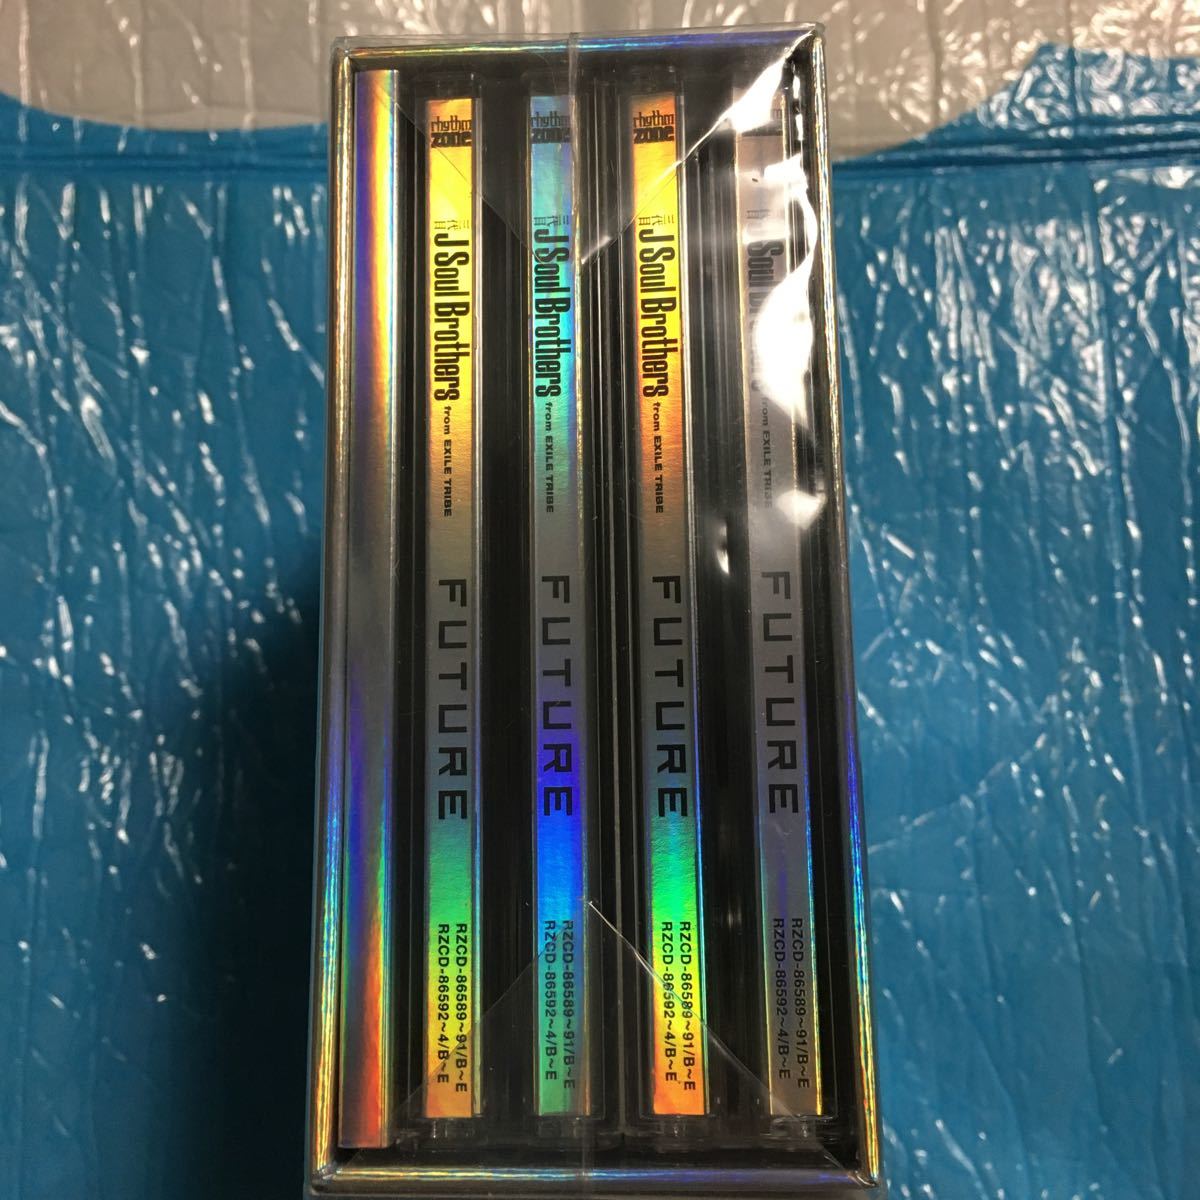 三代目J Soul brothers future 初回盤(3CD+4DVD) スマブラ対応 未開封